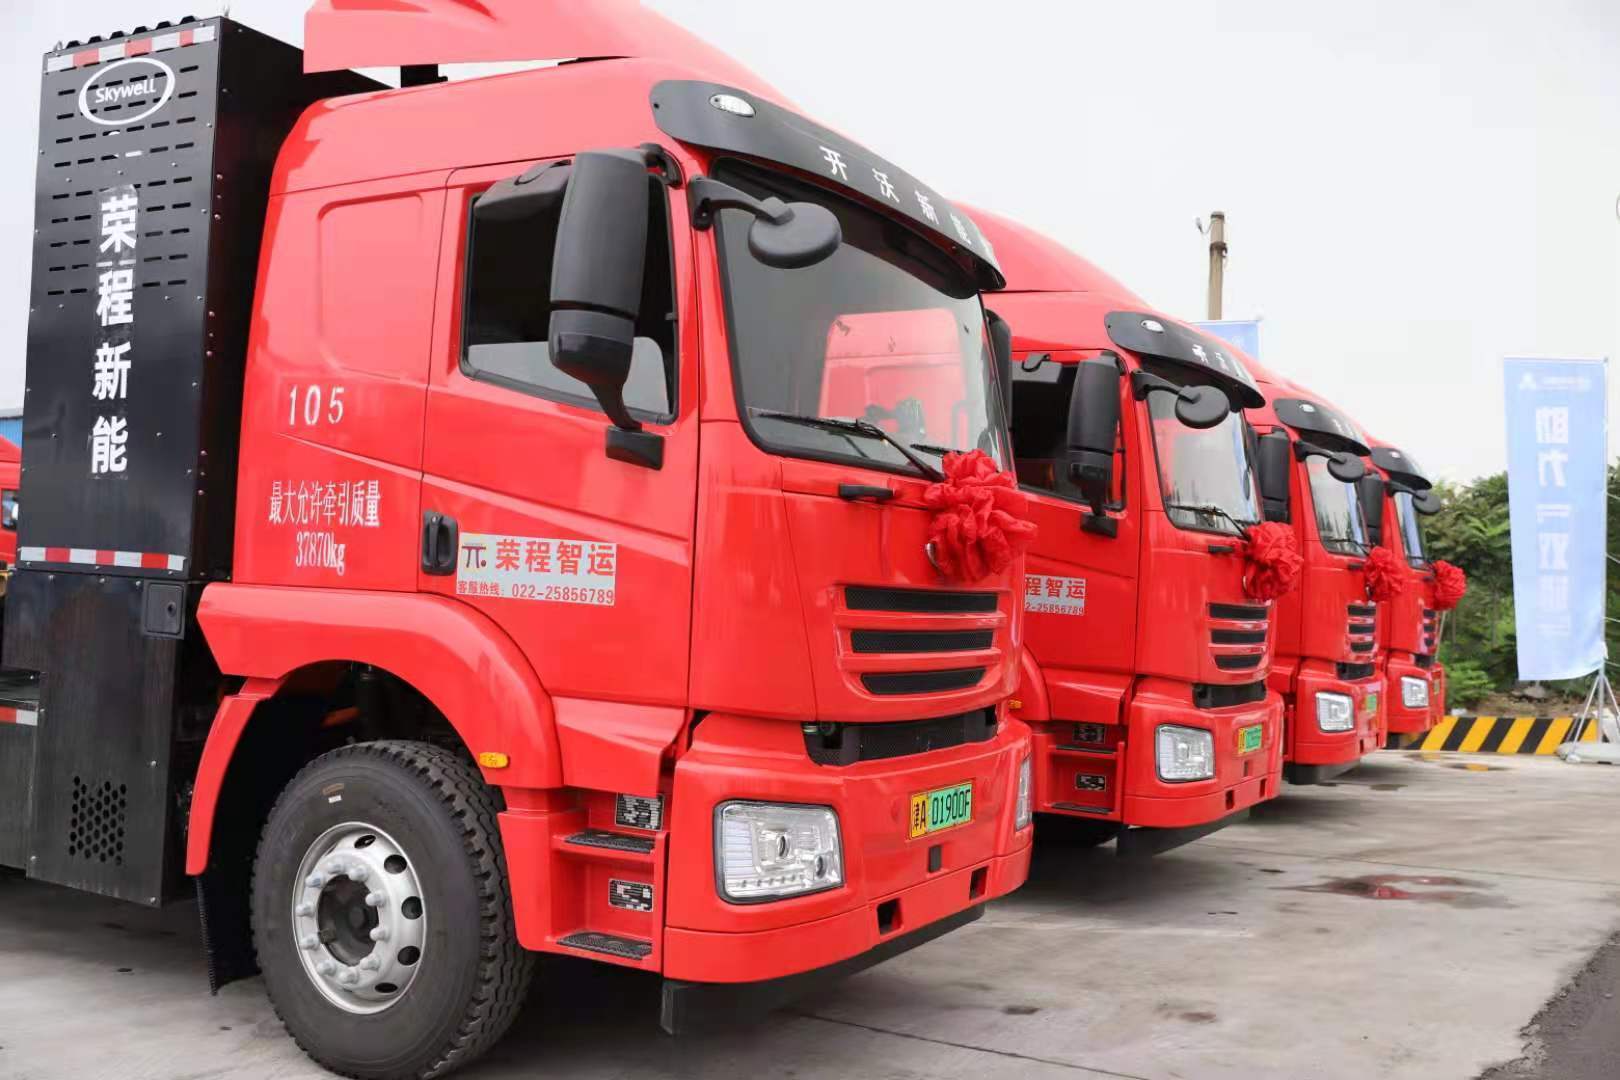 天津首个氢能运输示范应用场景在荣程集团落成启用